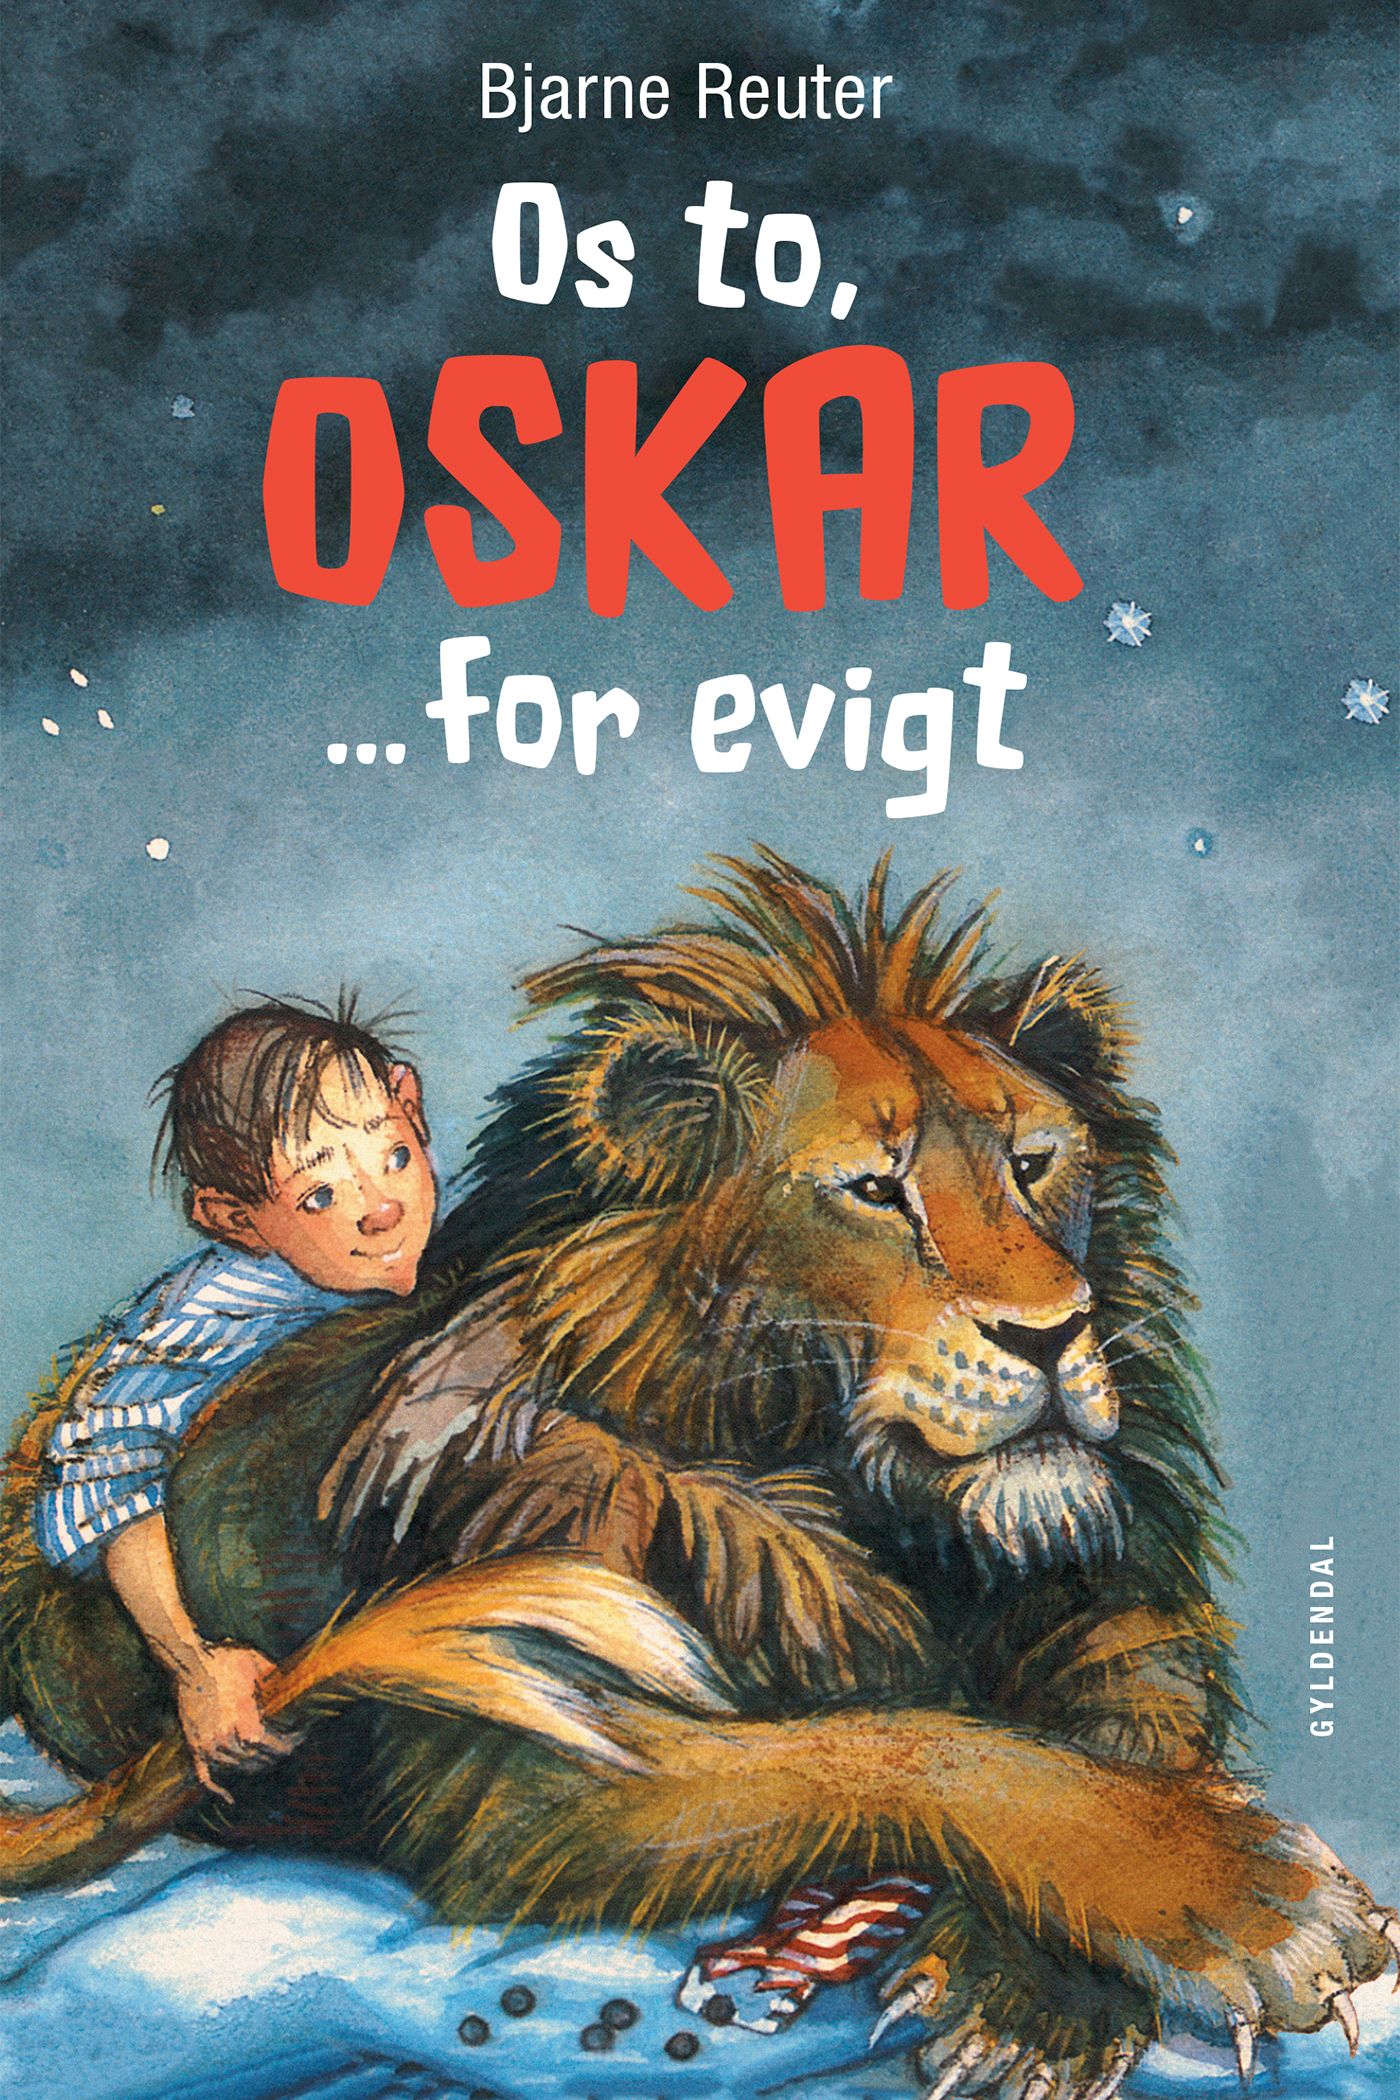 Os to, Oskar ... for evigt, e-bok av Bjarne Reuter